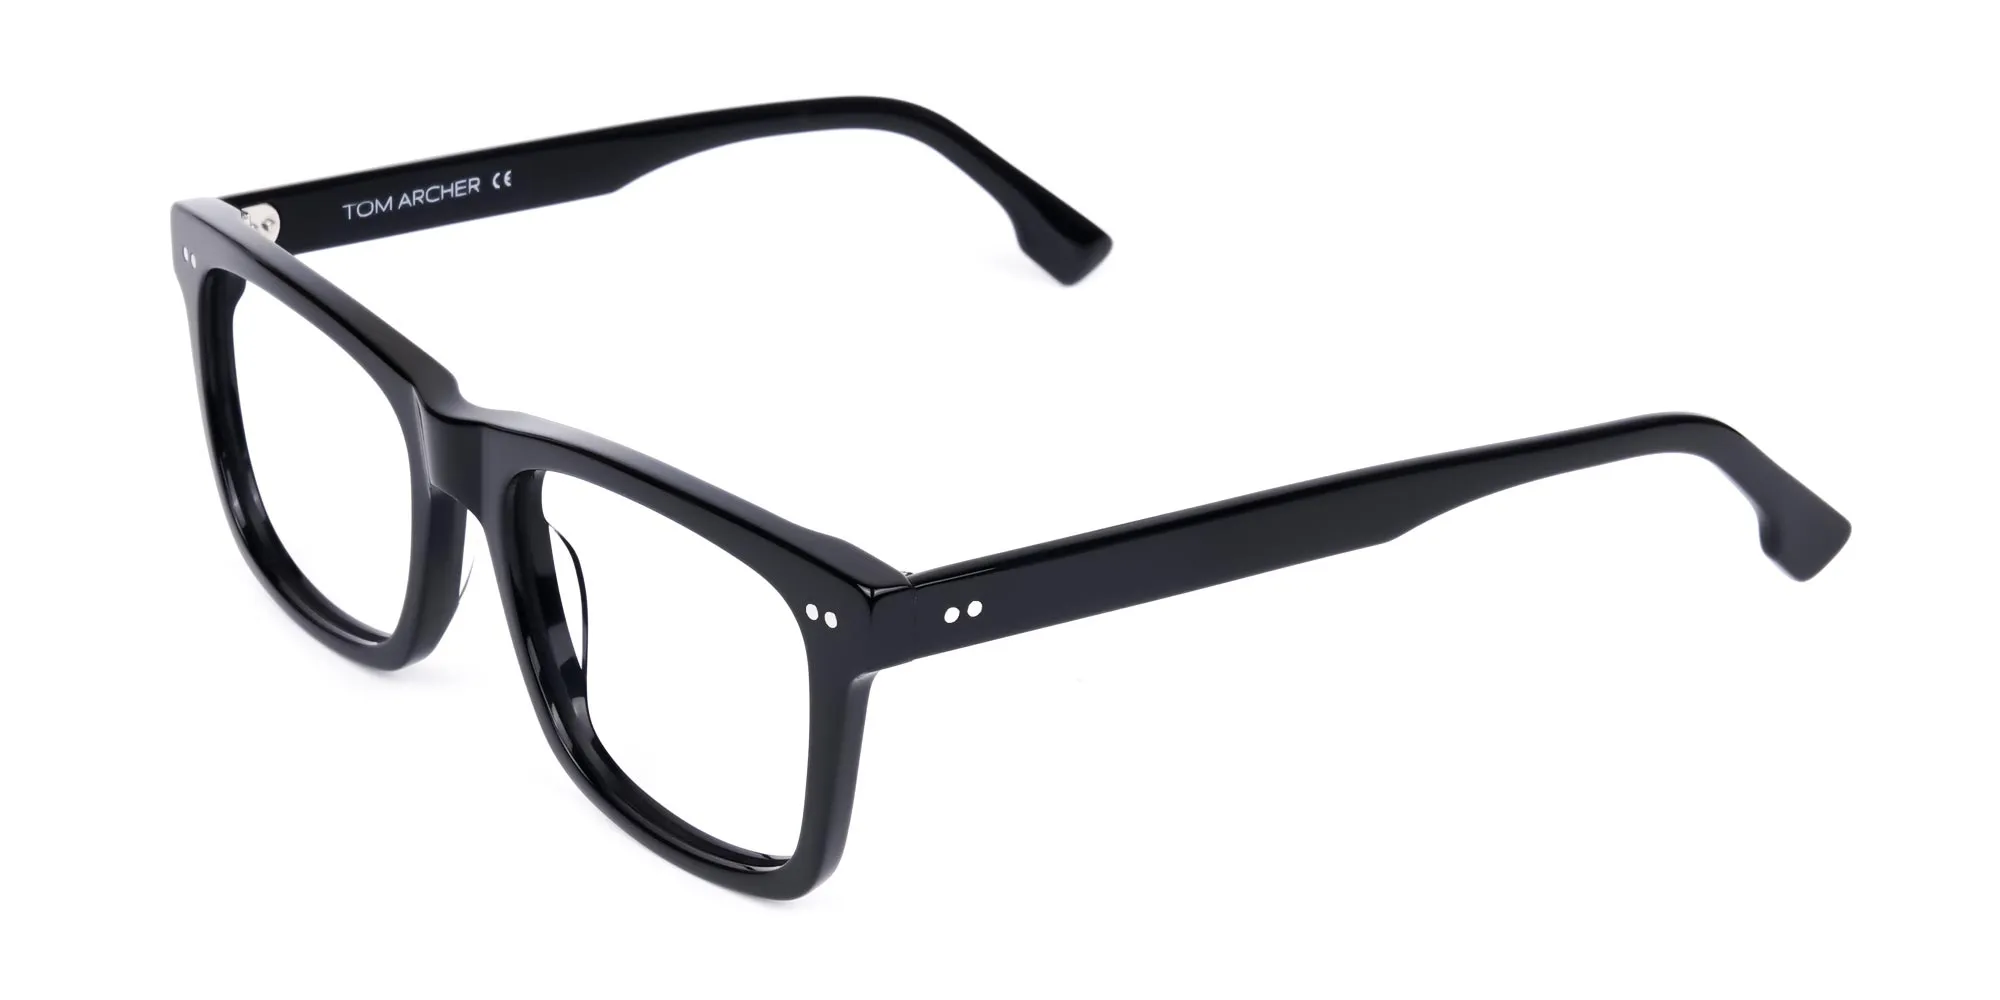 Black Square Glasses Frame